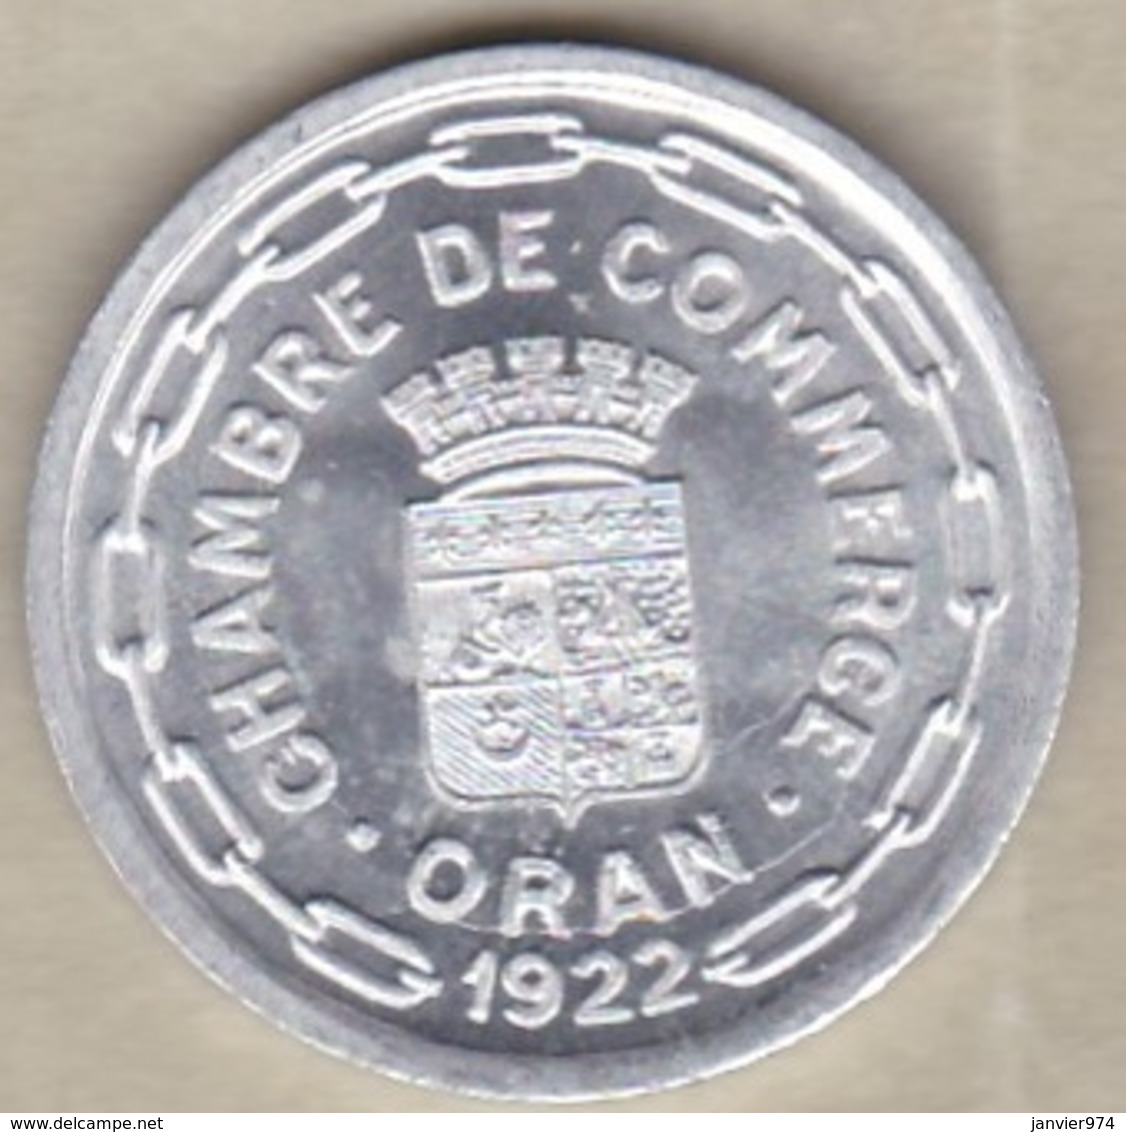 Algérie, Chambre De Commerce D'Oran , 25 Centimes 1922 , Aluminium. SUP/XF ++ - Algérie